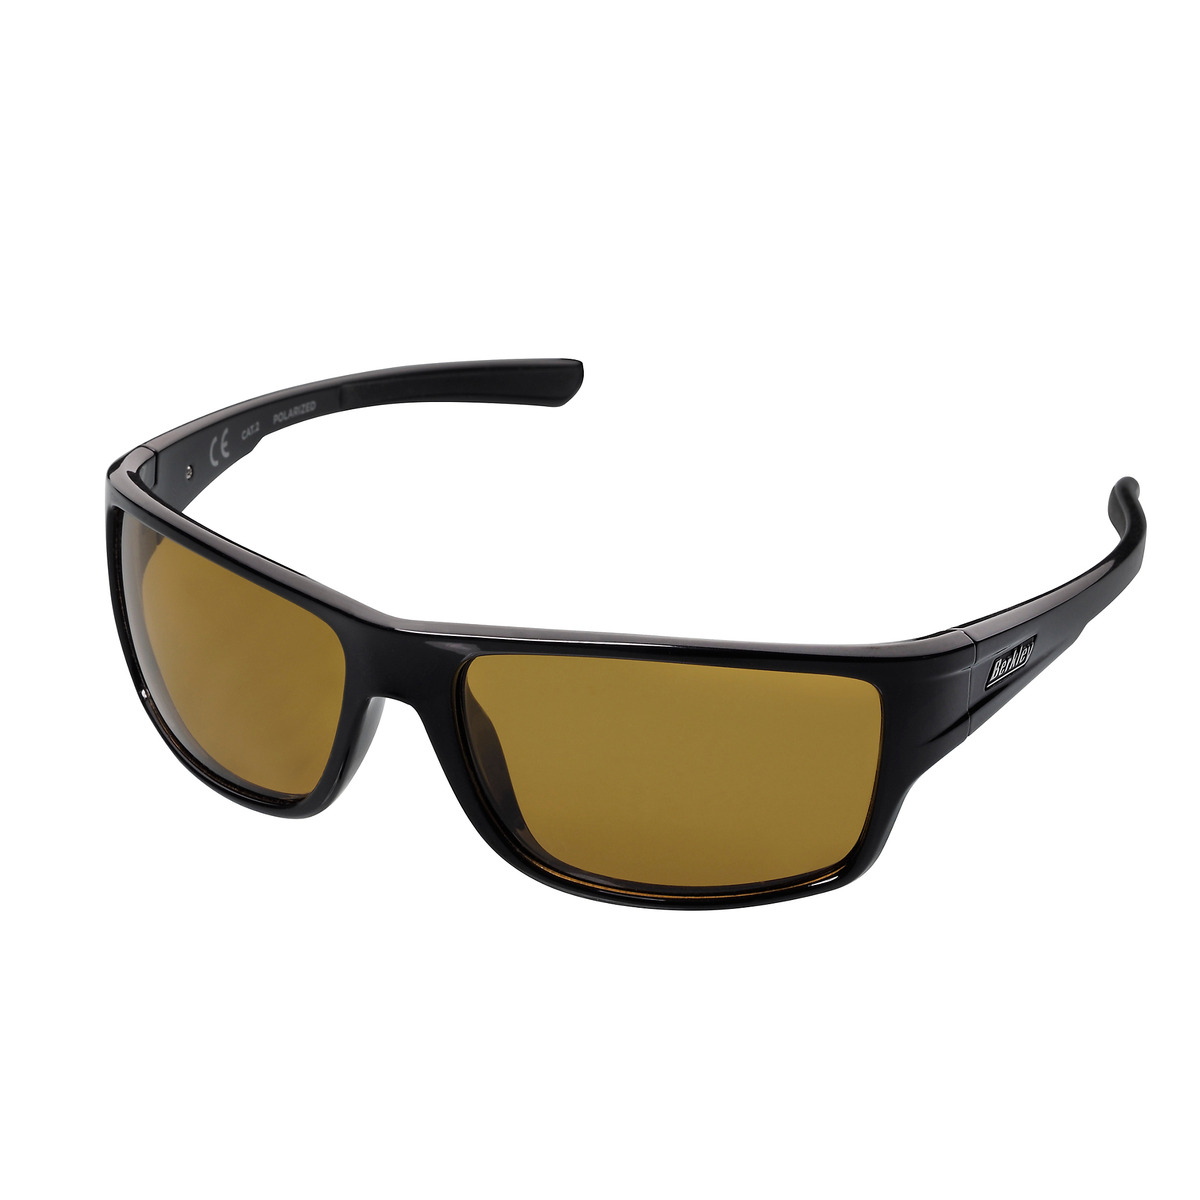 Berkley B11 Sunglasses - Black/Yellow